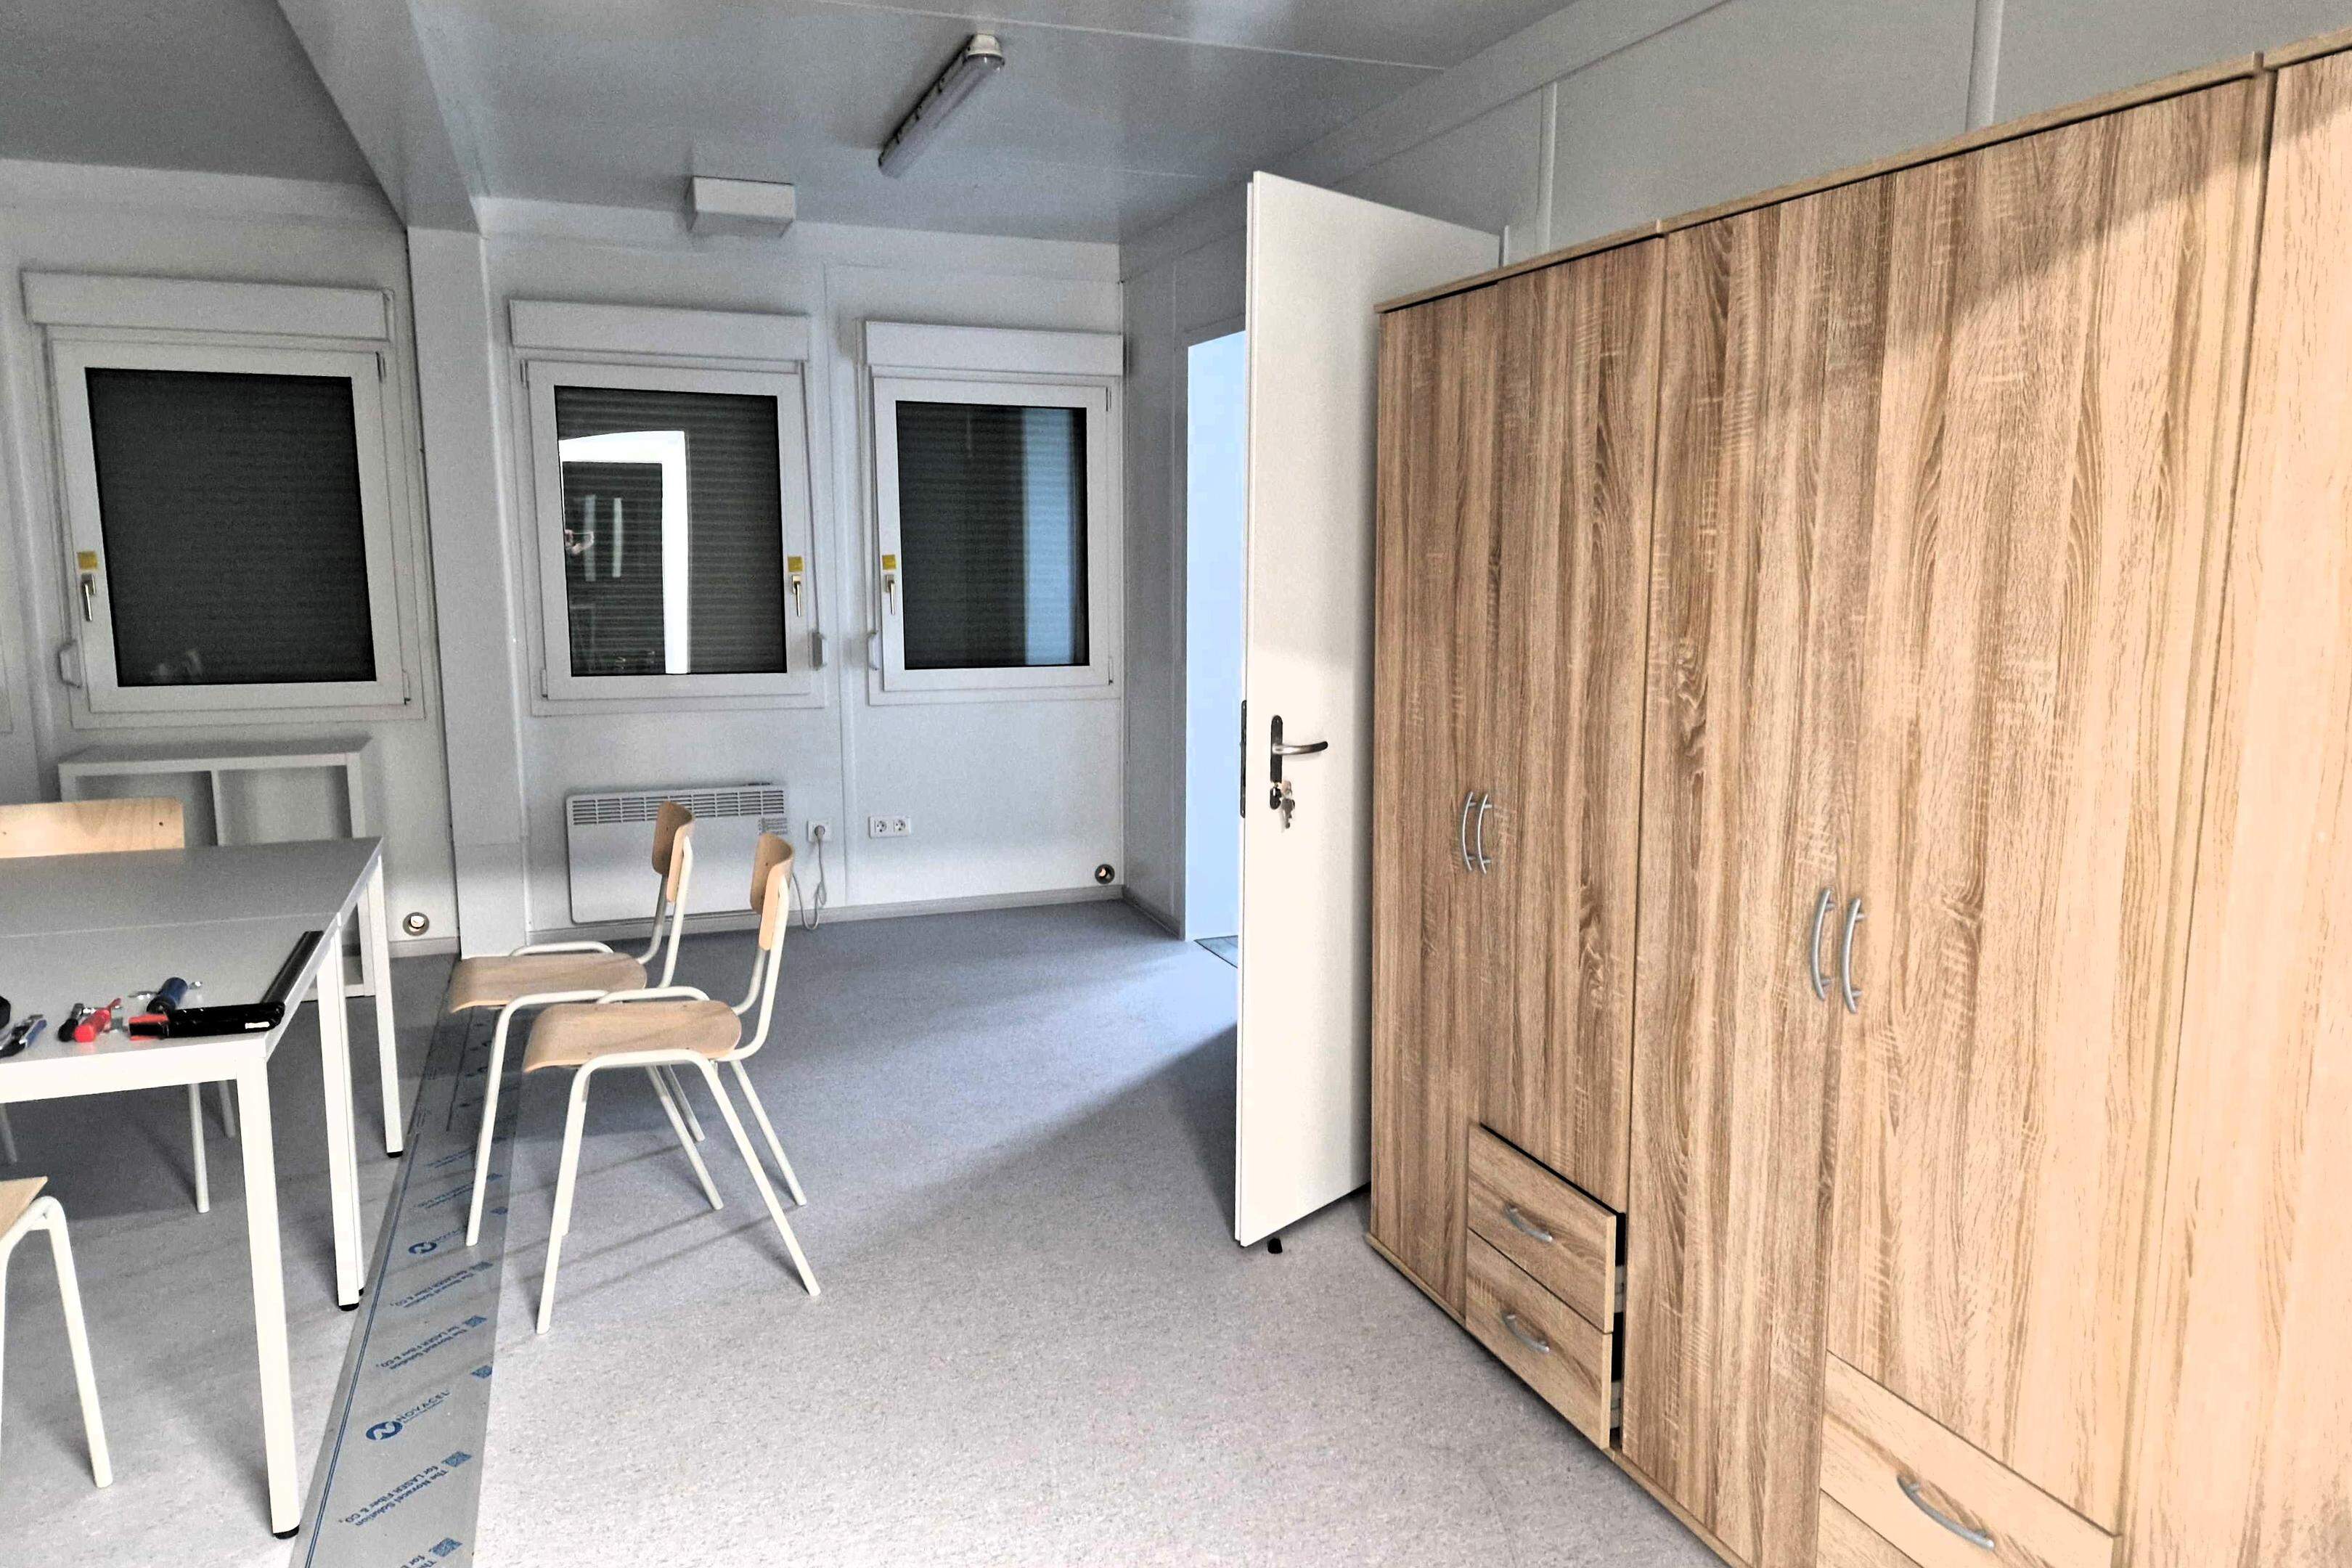 Frisch aufgebaute Möbel in der neuen Flüchtlingsunterkunft Frauwüllesheim.